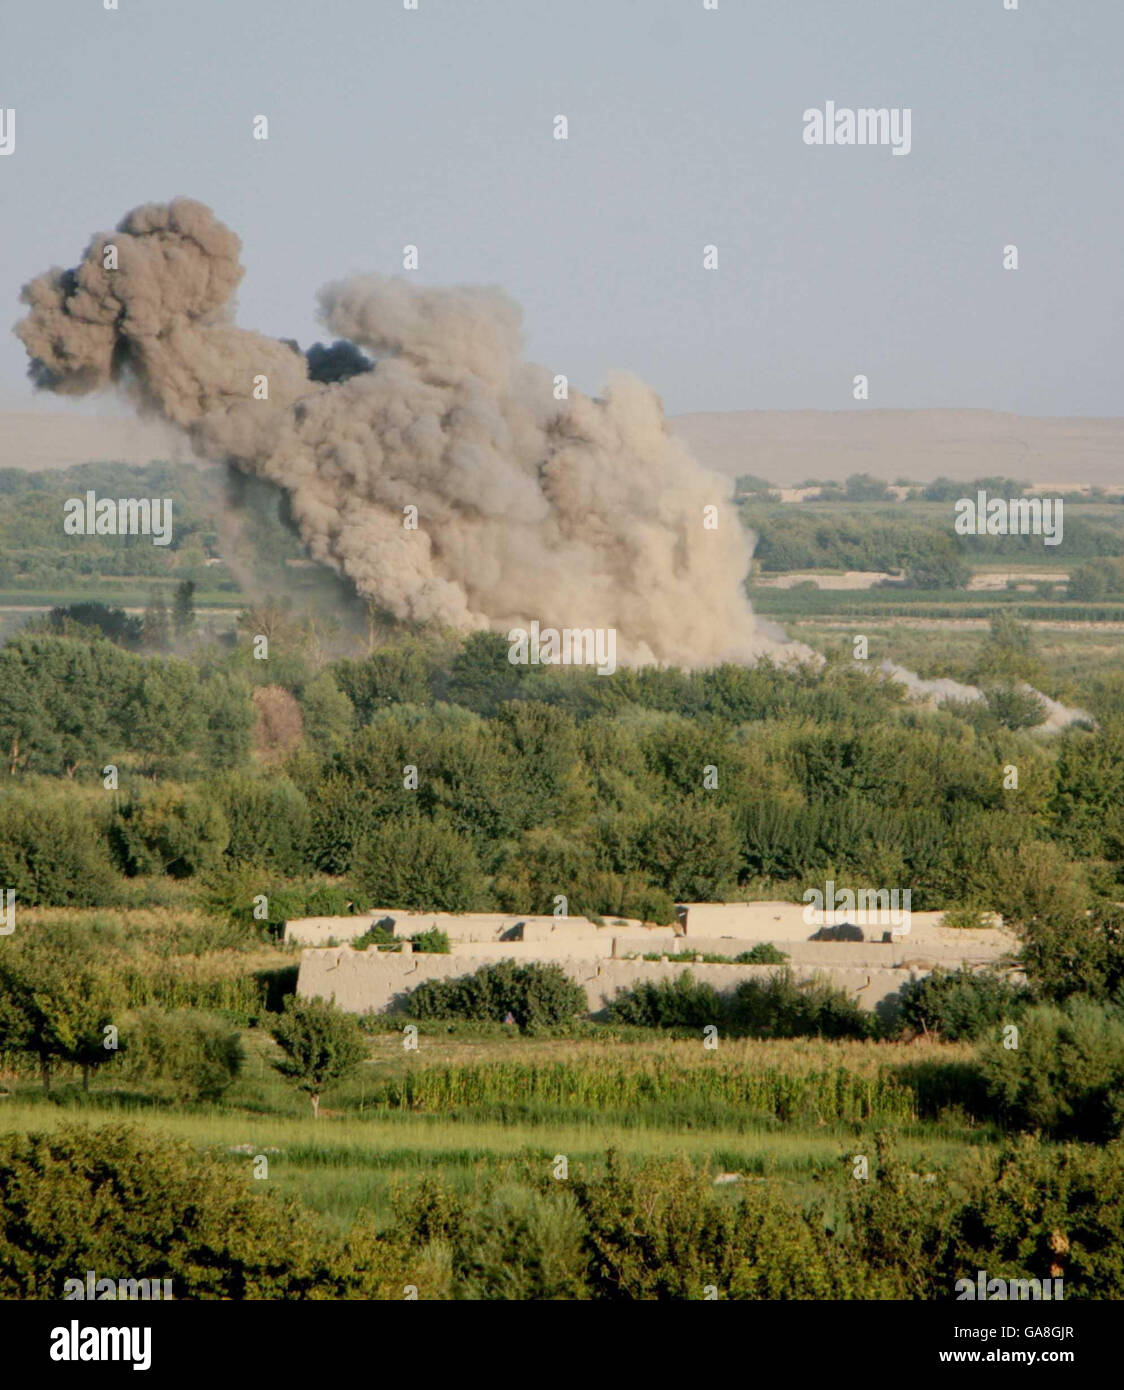 Rauch und Trümmer steigen auf, nachdem eine 500 Pfund schwere GBU-38-Bombe, die von einer F15 abgeworfen wurde, während eines Engagements zwischen dem Regiment Worcester und Sherwood Foresters sowie Taliban-Kämpfern in der Region in der Grünen Zone, Provinz Helmand, Afghanistan, explodiert. Stockfoto